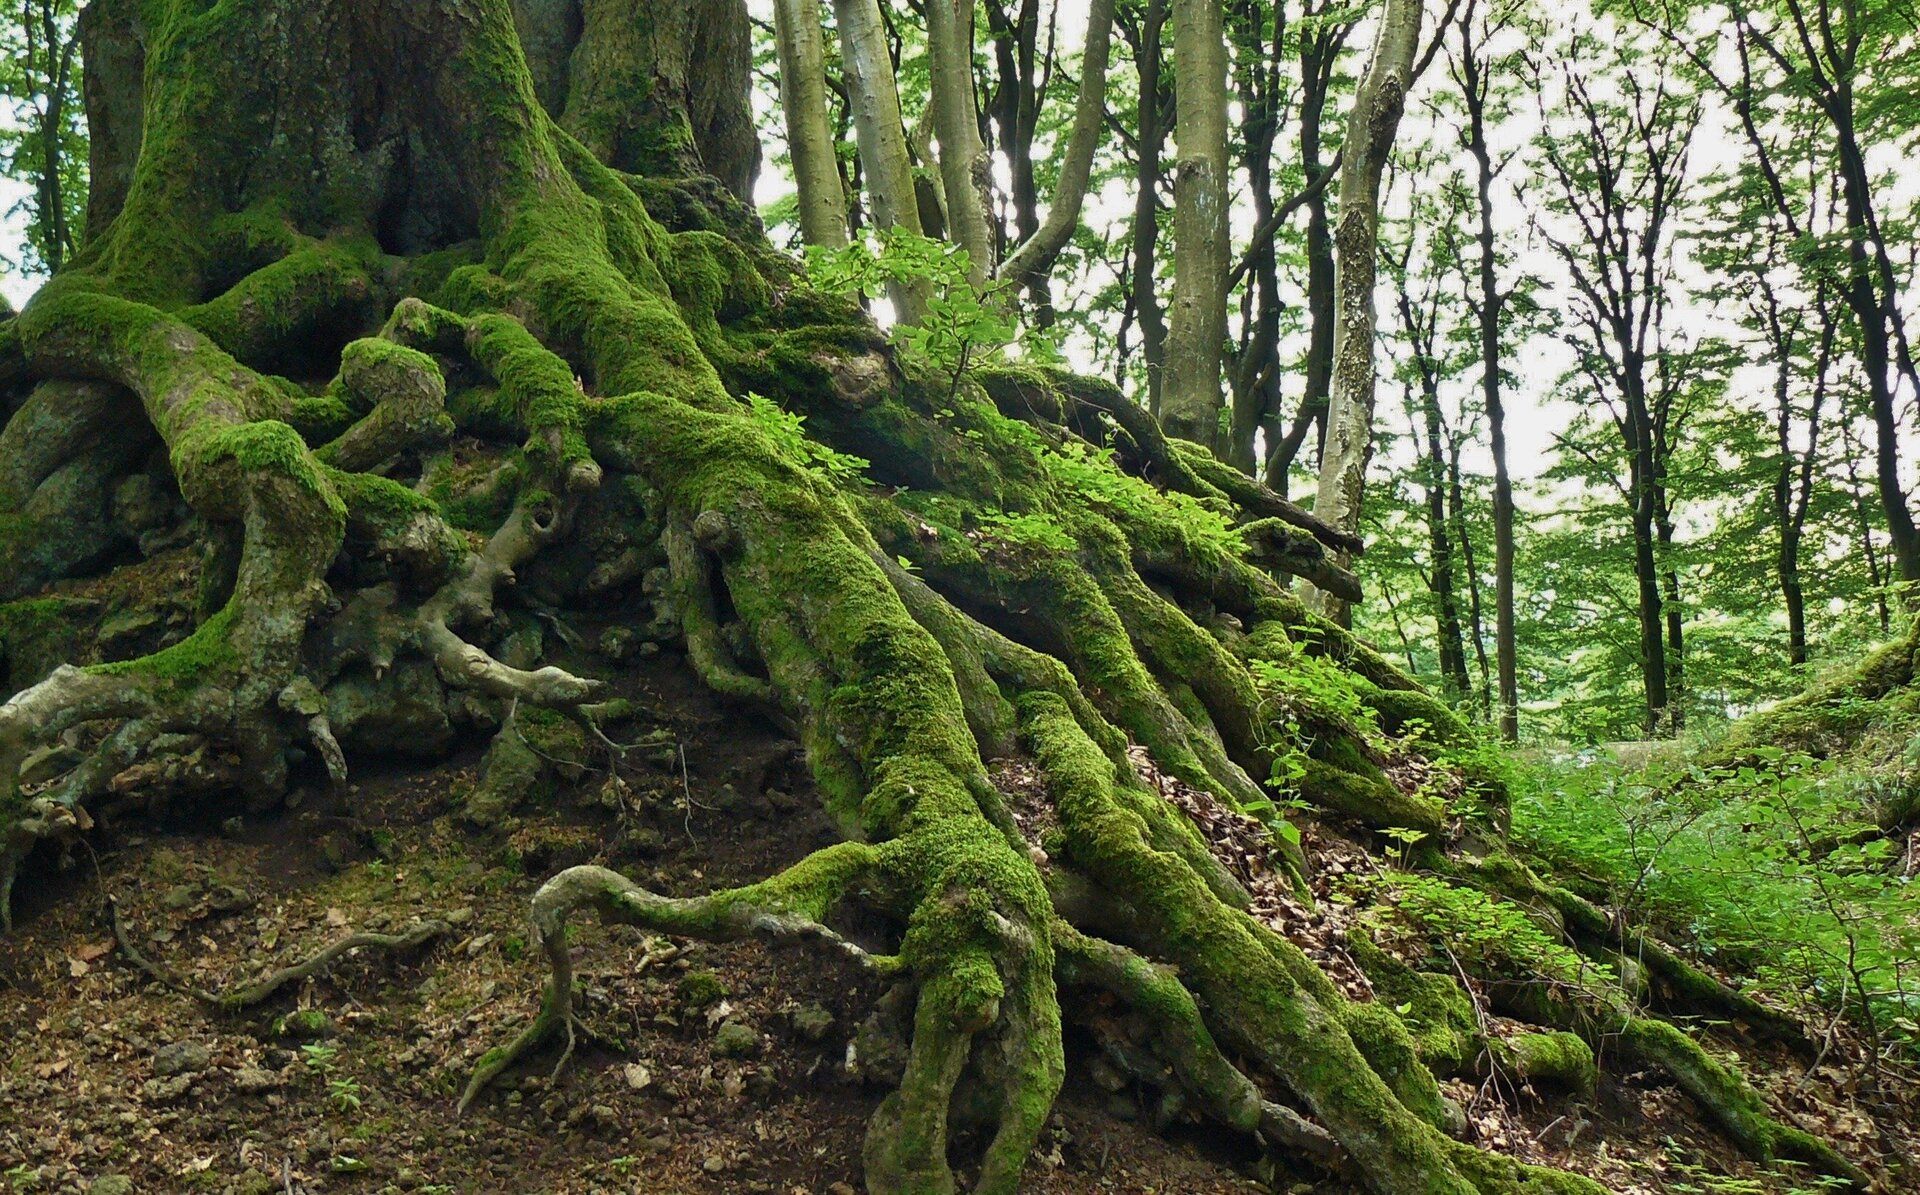 Na zdjęciu są korzenie dużego drzewa. Korzenie rosną na powierzchni gleby. Pokrywa je mech.  